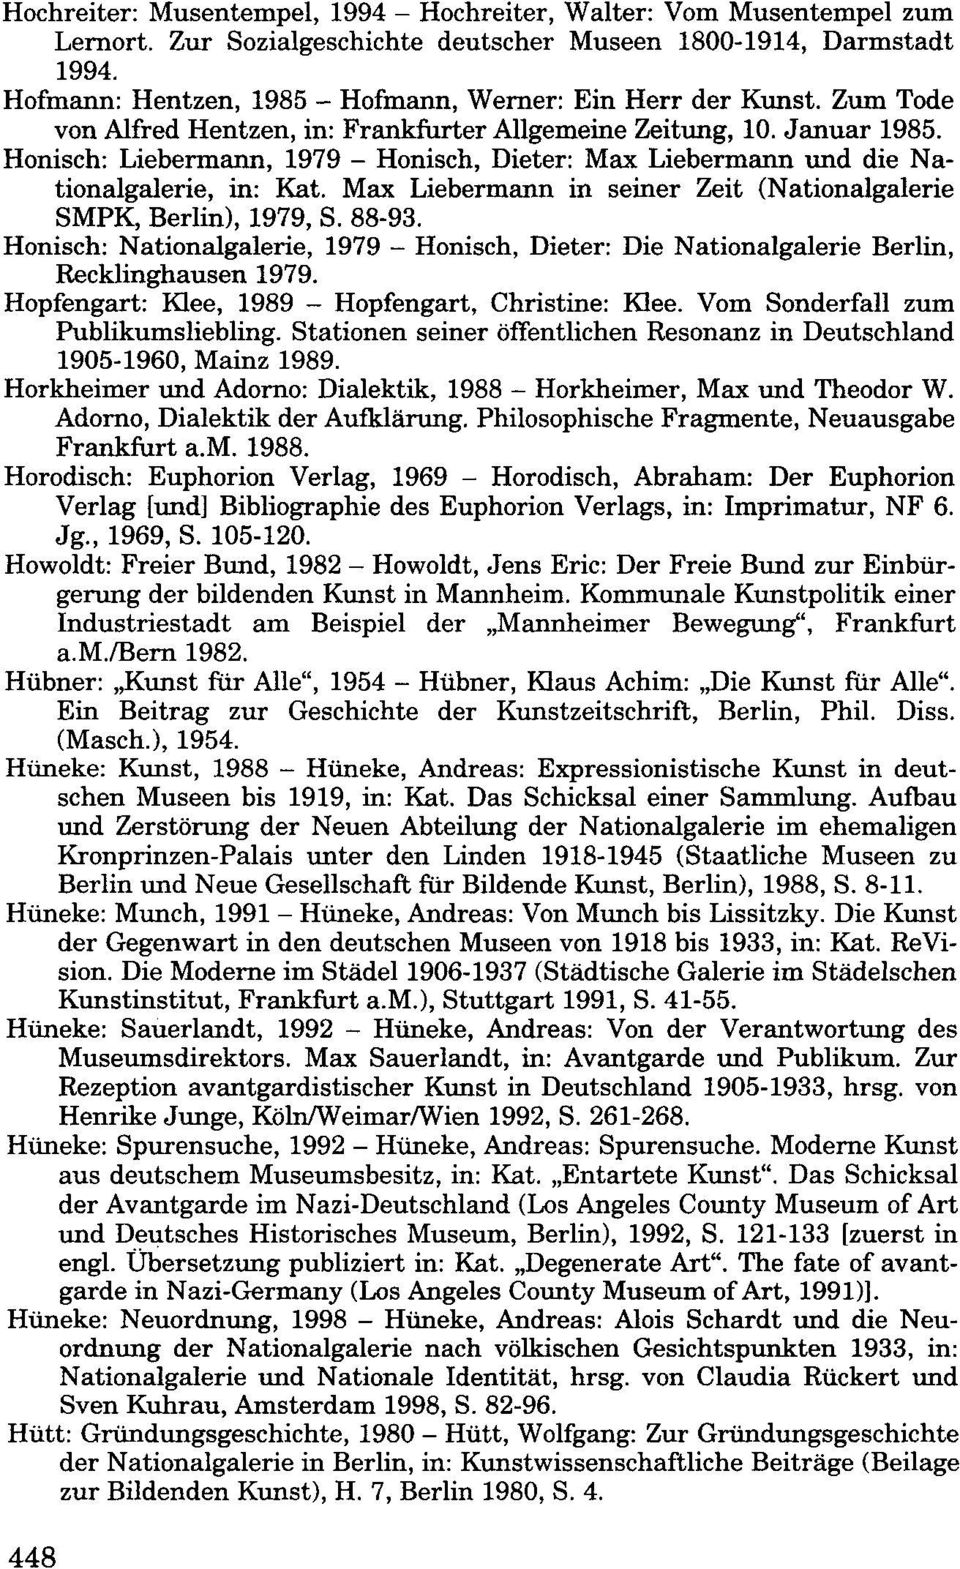 Honisch: Liebermann, 1979 - Honisch, Dieter: Max Liebermann und die Nationalgalerie, in: Kat. Max Liebermann in seiner Zeit (Nationalgalerie SMPK, Berlin), 1979, S. 88-93.